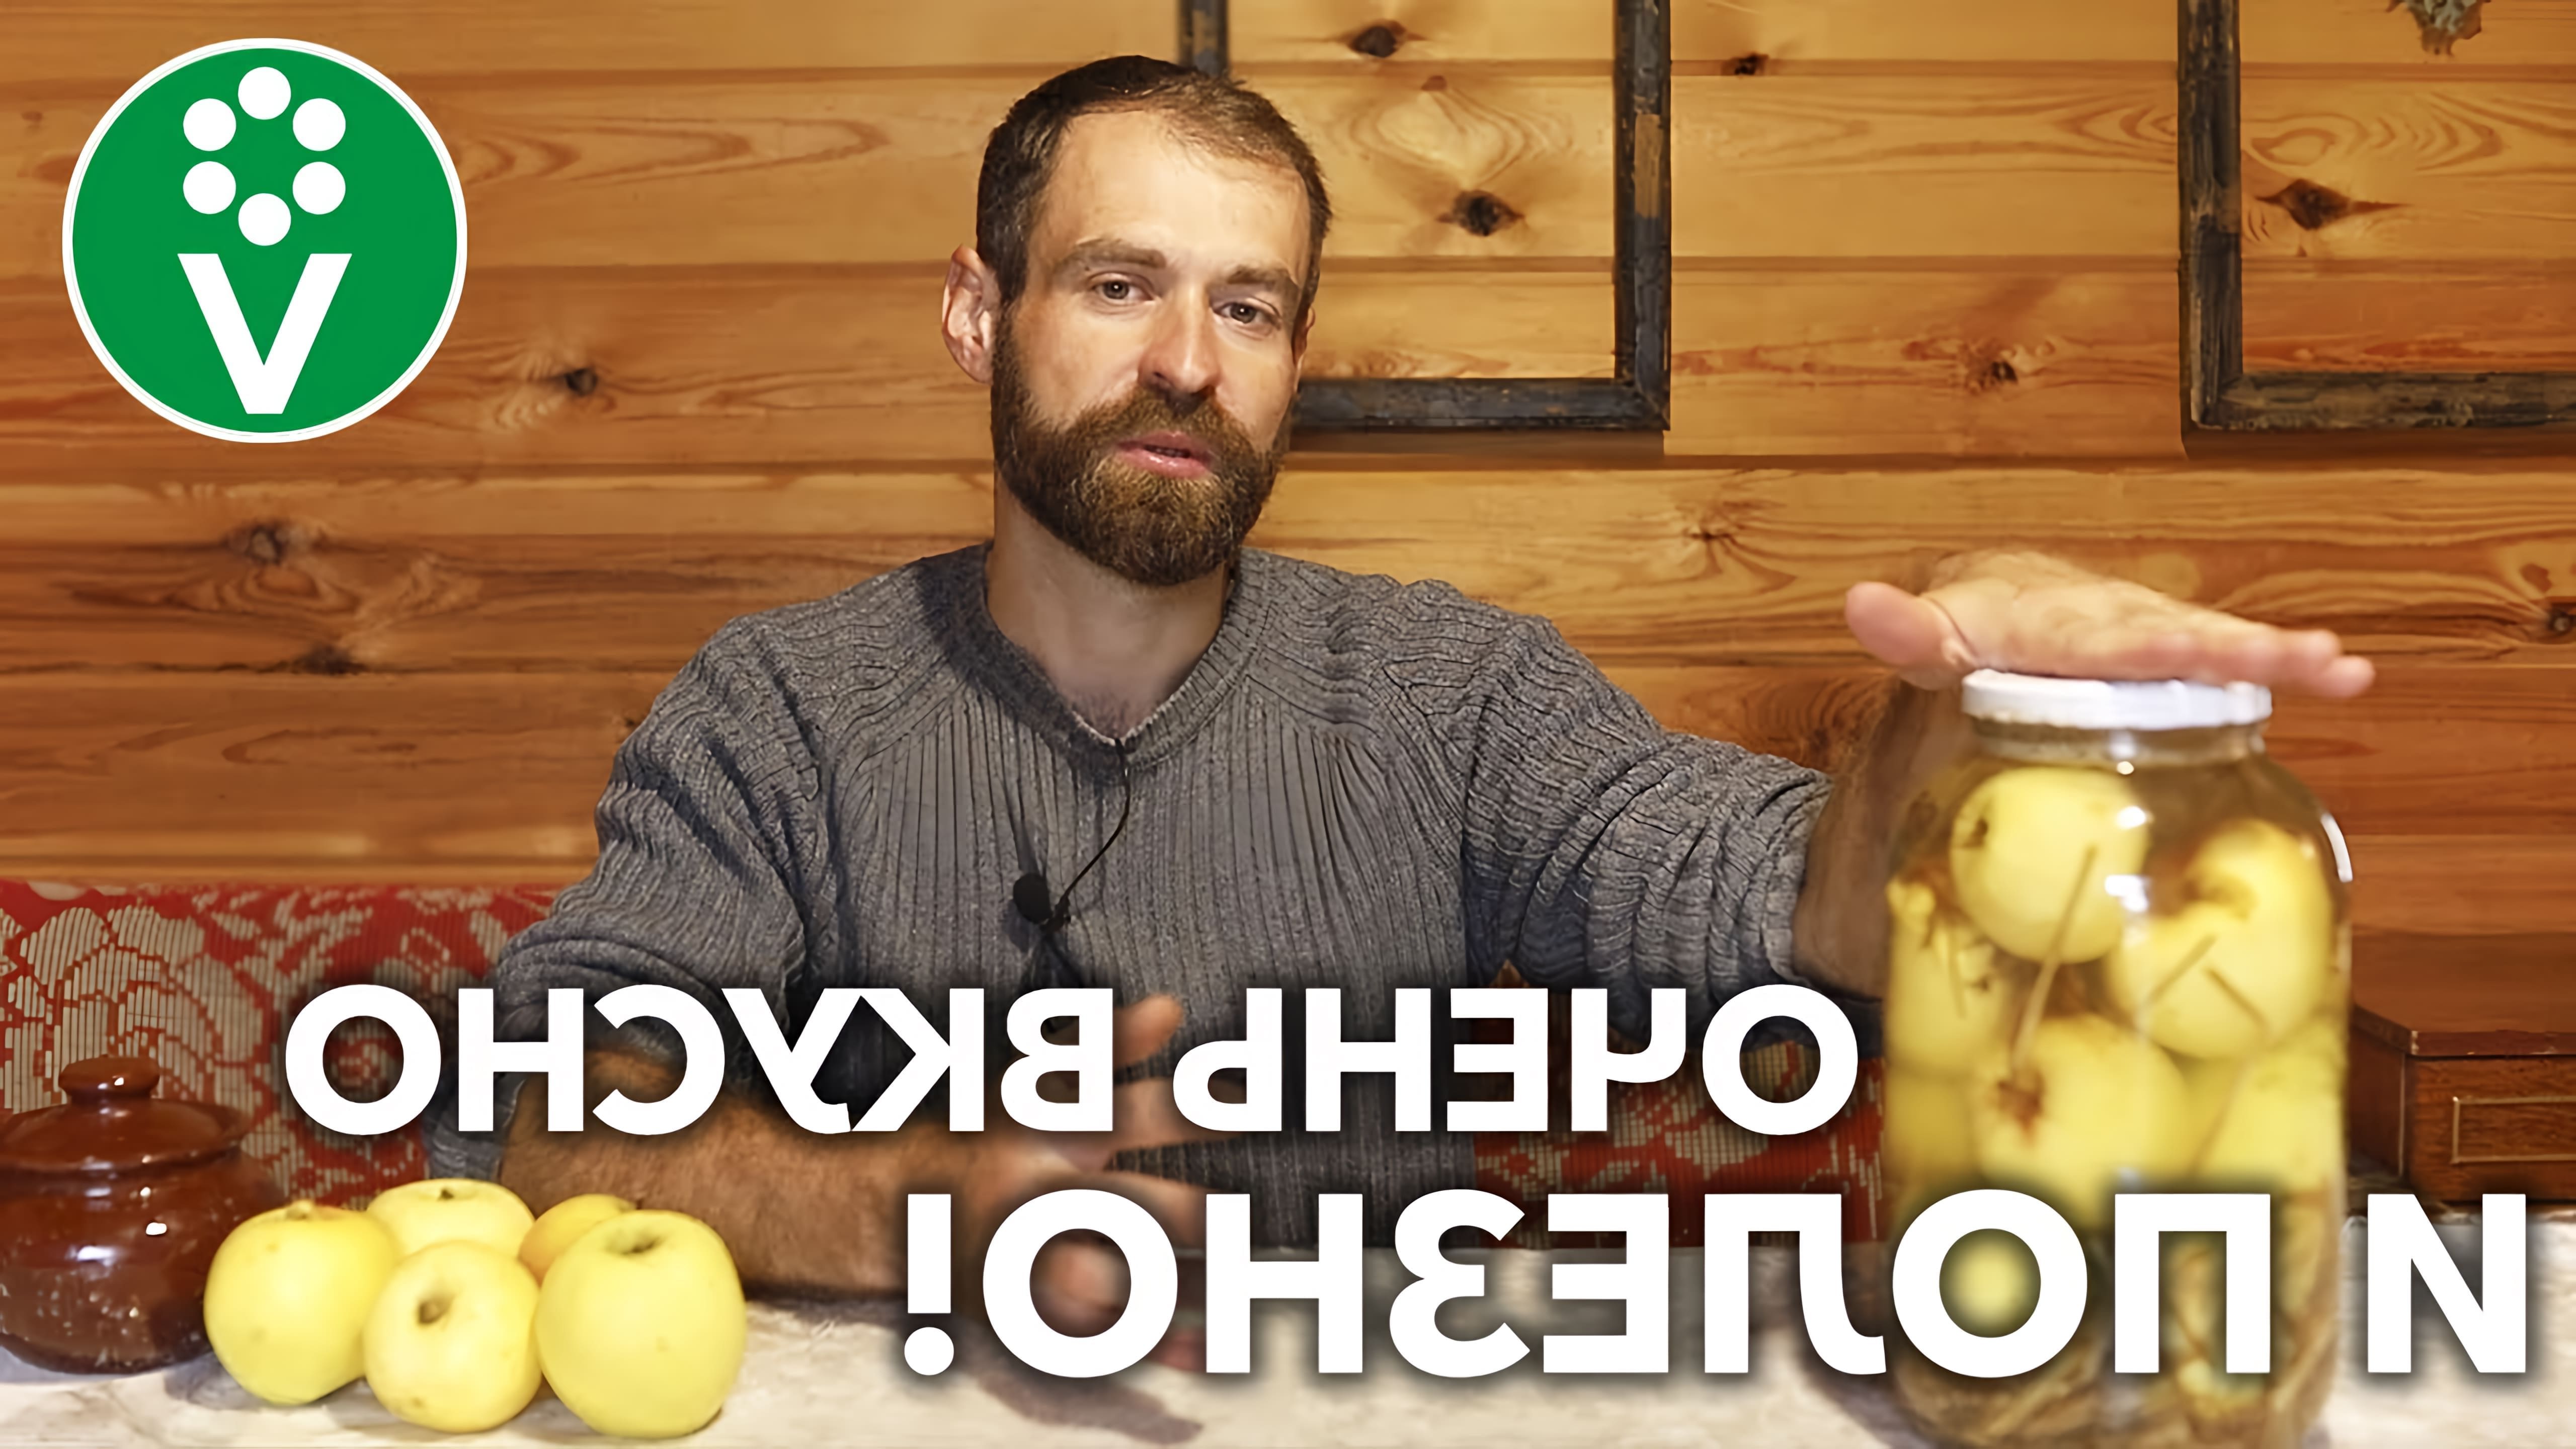 В этом видео Дмитрий, садовник и владелец личного подсобного хозяйства, делится рецептом приготовления моченых яблок по старинному рецепту